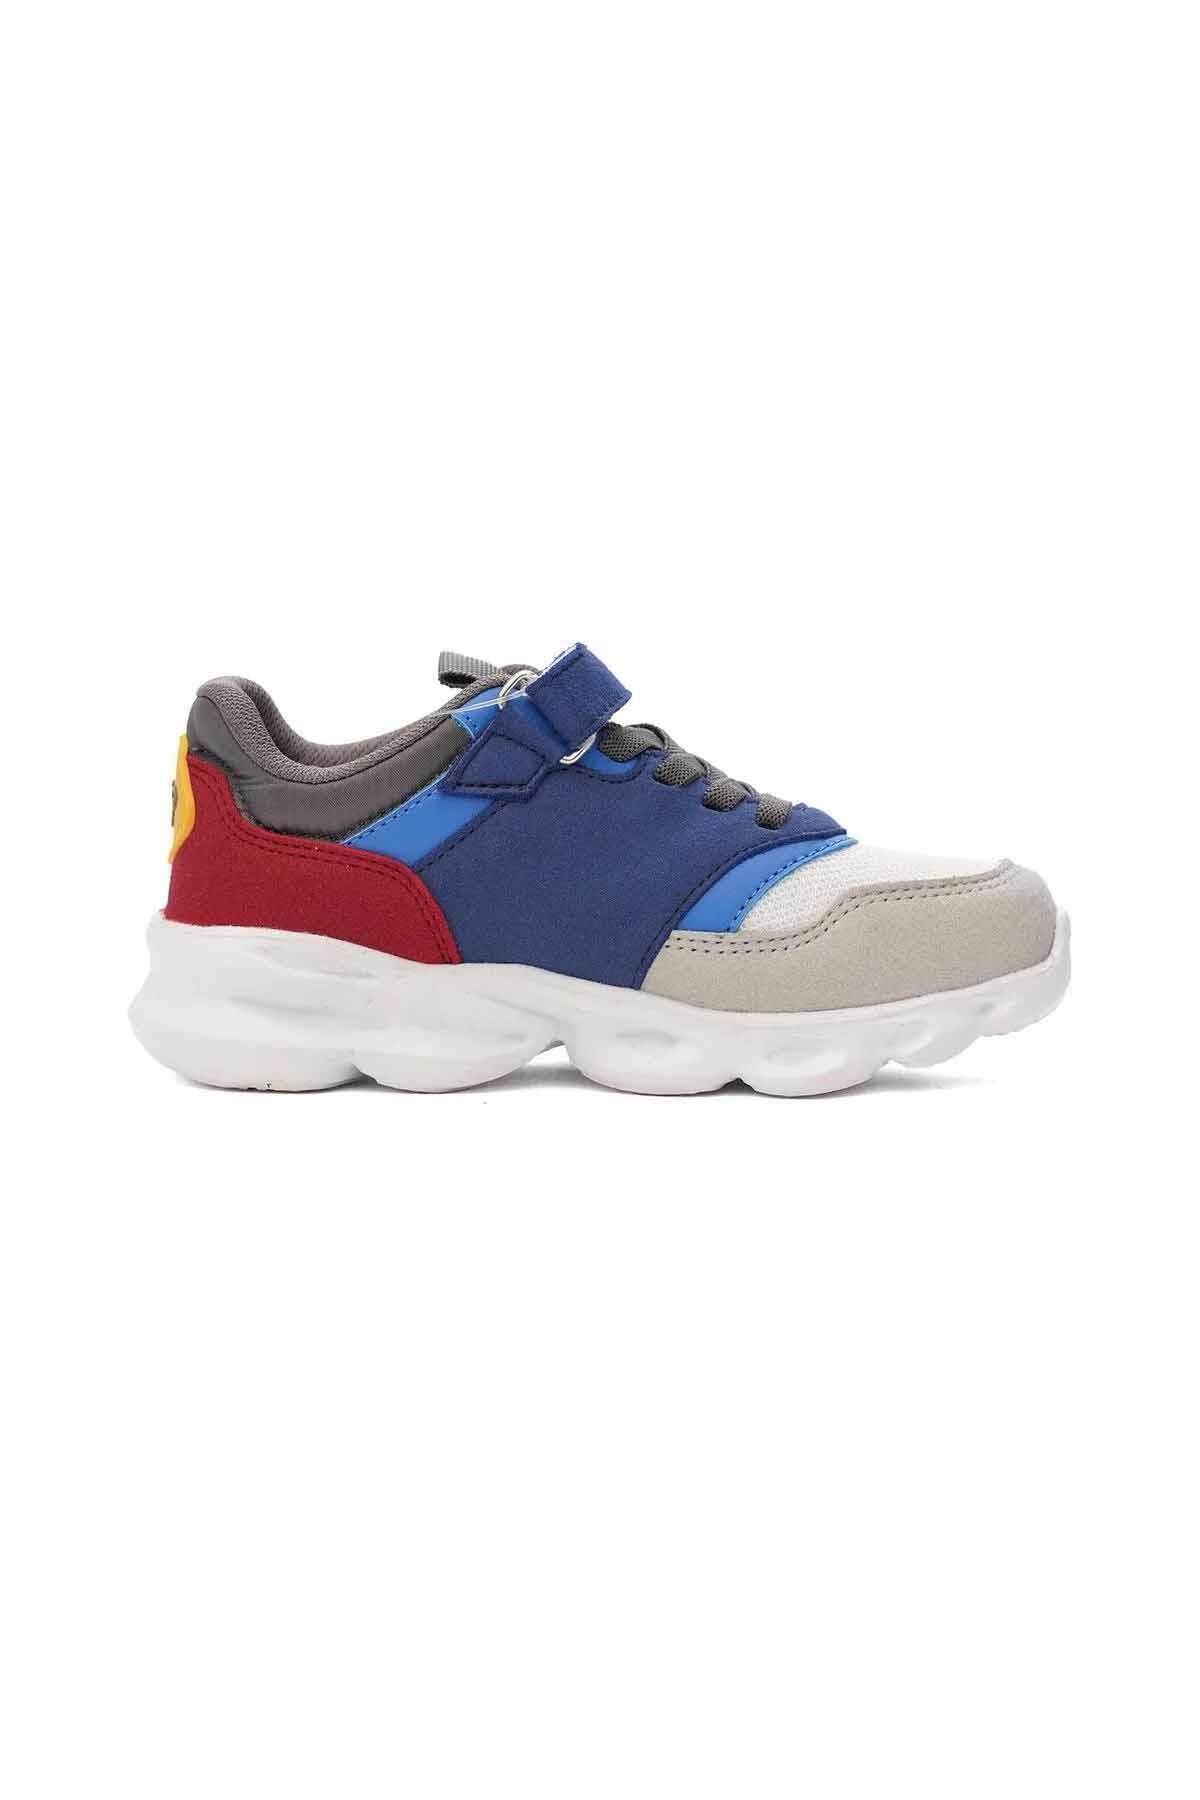 hummel JUNG JR. Işıklı Çocuk Ayakkabı Çocuk Sneaker Ayakkabı 900427-9253WHITE/BLUE